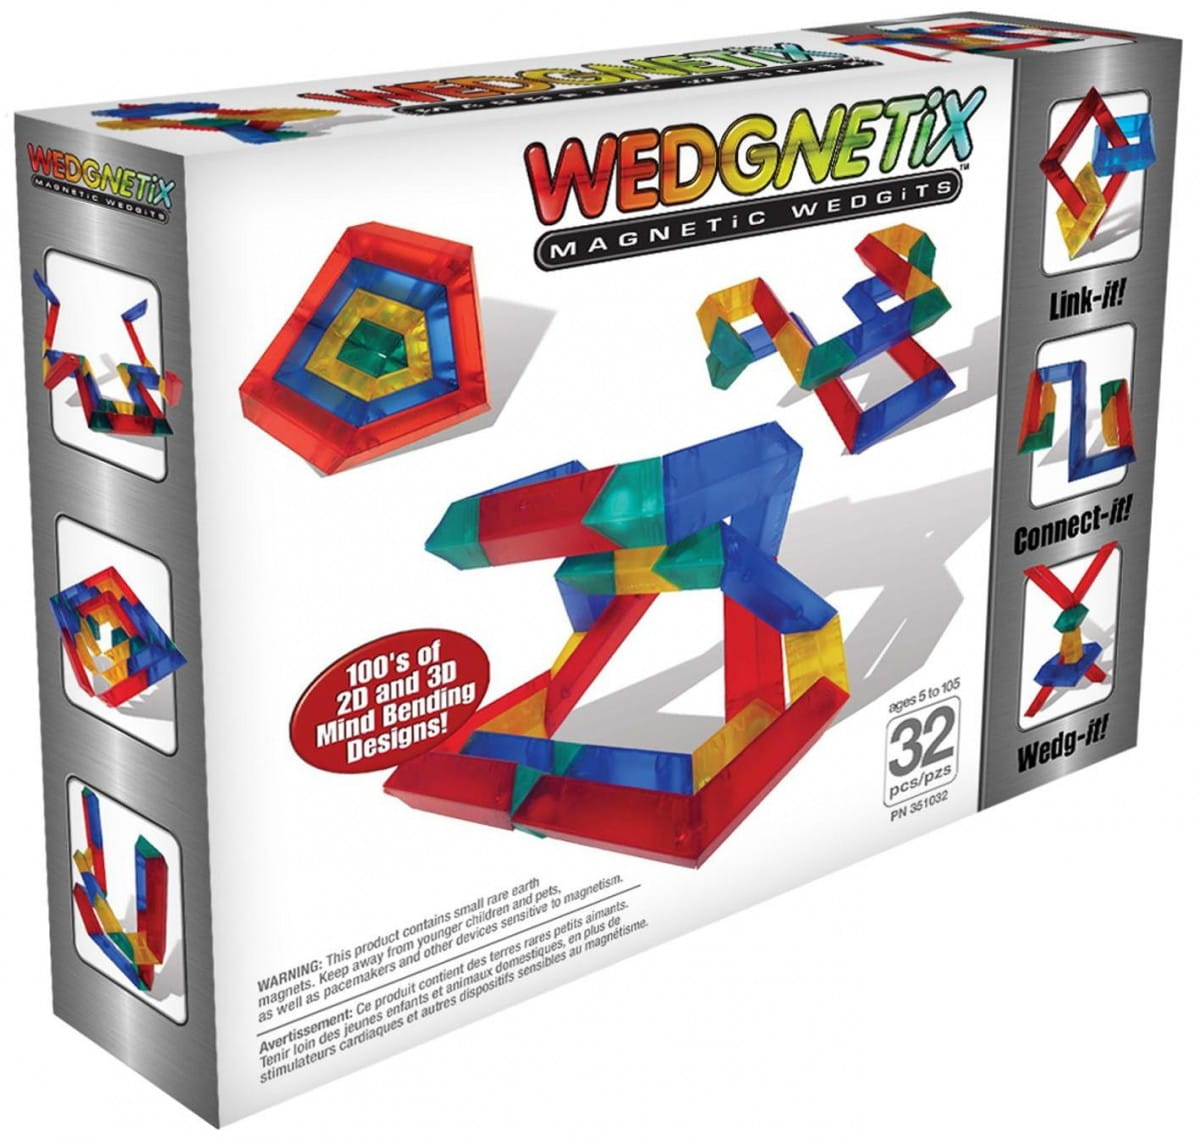   Wedgits Wedgnetix - 32 